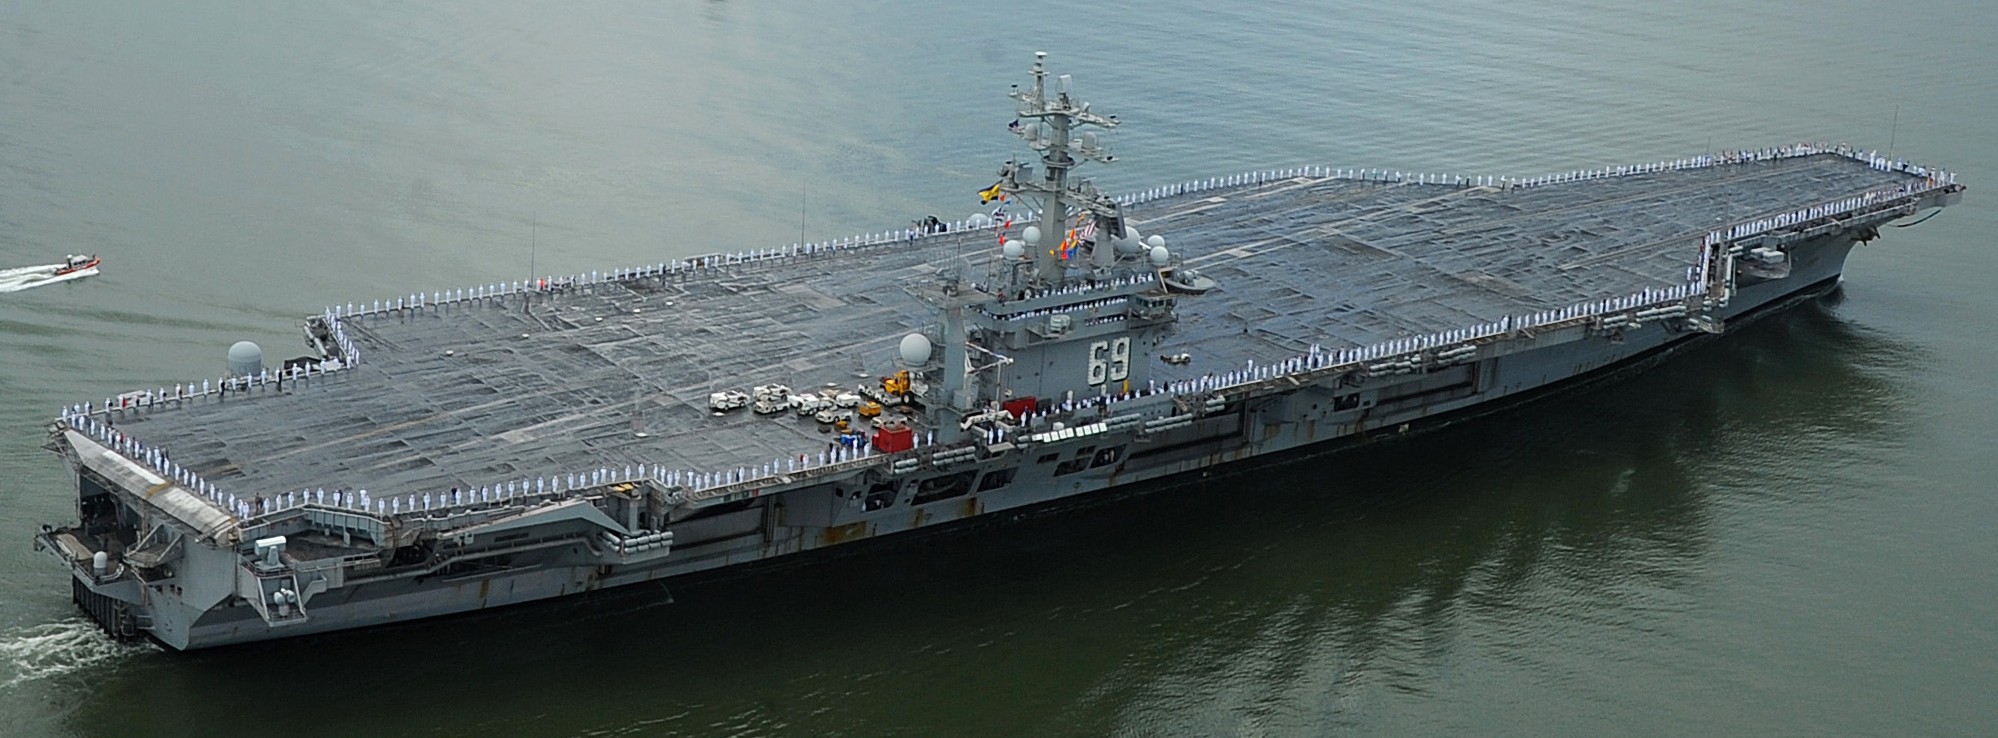 cvn-69 uss dwight d. eisenhower aircraft carrier us navy 79